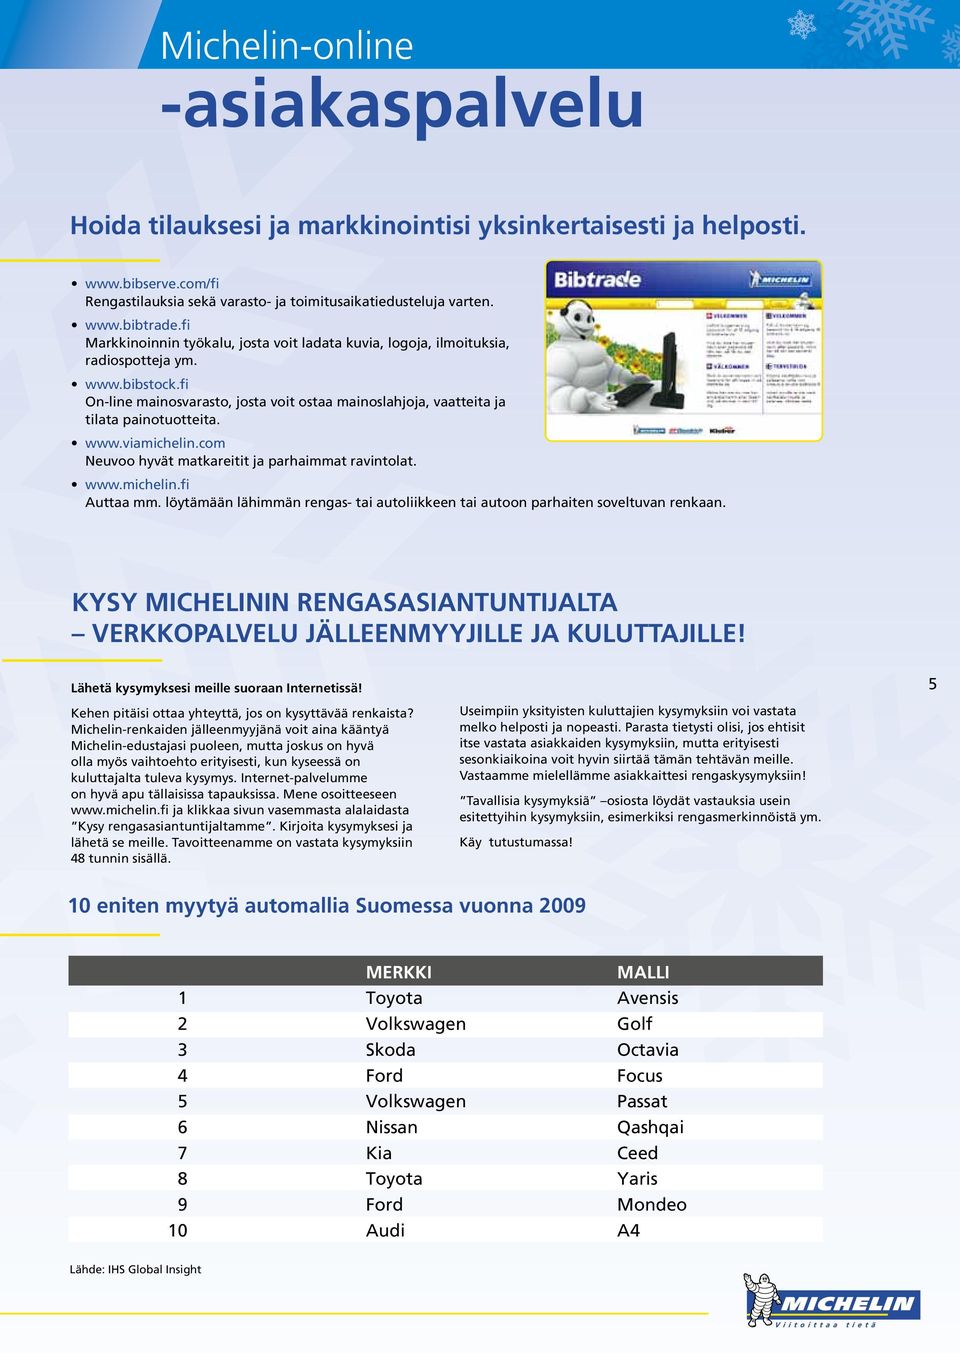 www.viamichelin.com Neuvoo hyvät matkareitit ja parhaimmat ravintolat. www.michelin.fi Auttaa mm. löytämään lähimmän rengas- tai autoliikkeen tai autoon parhaiten soveltuvan renkaan.